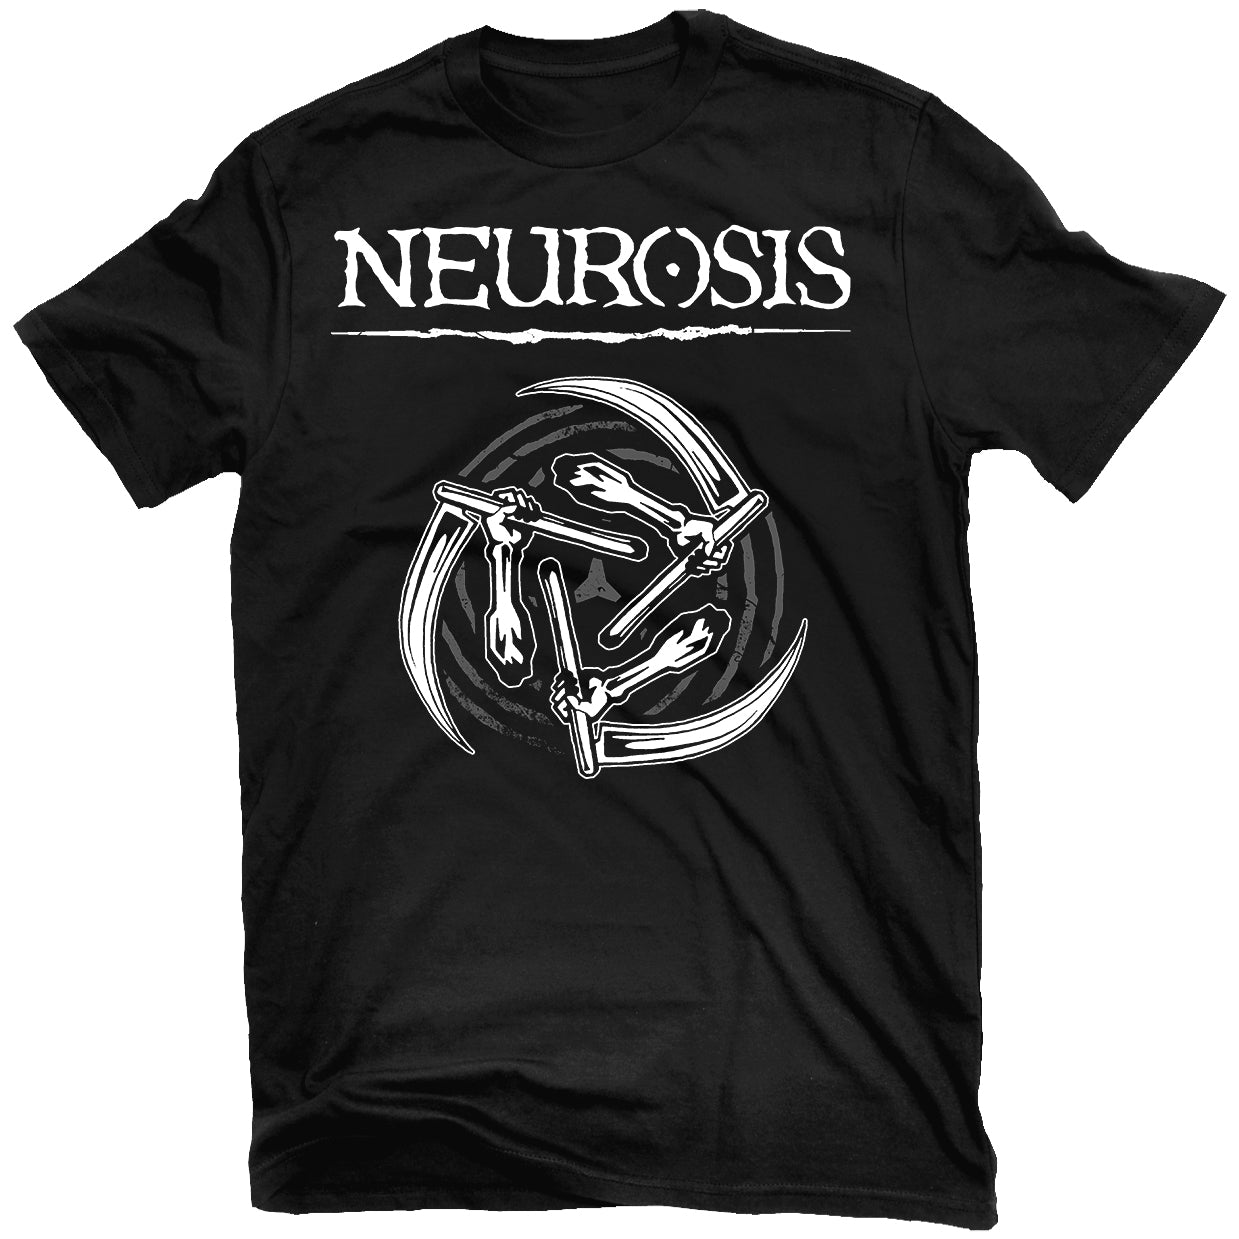 Neurosis "Sickles" T-Shirt